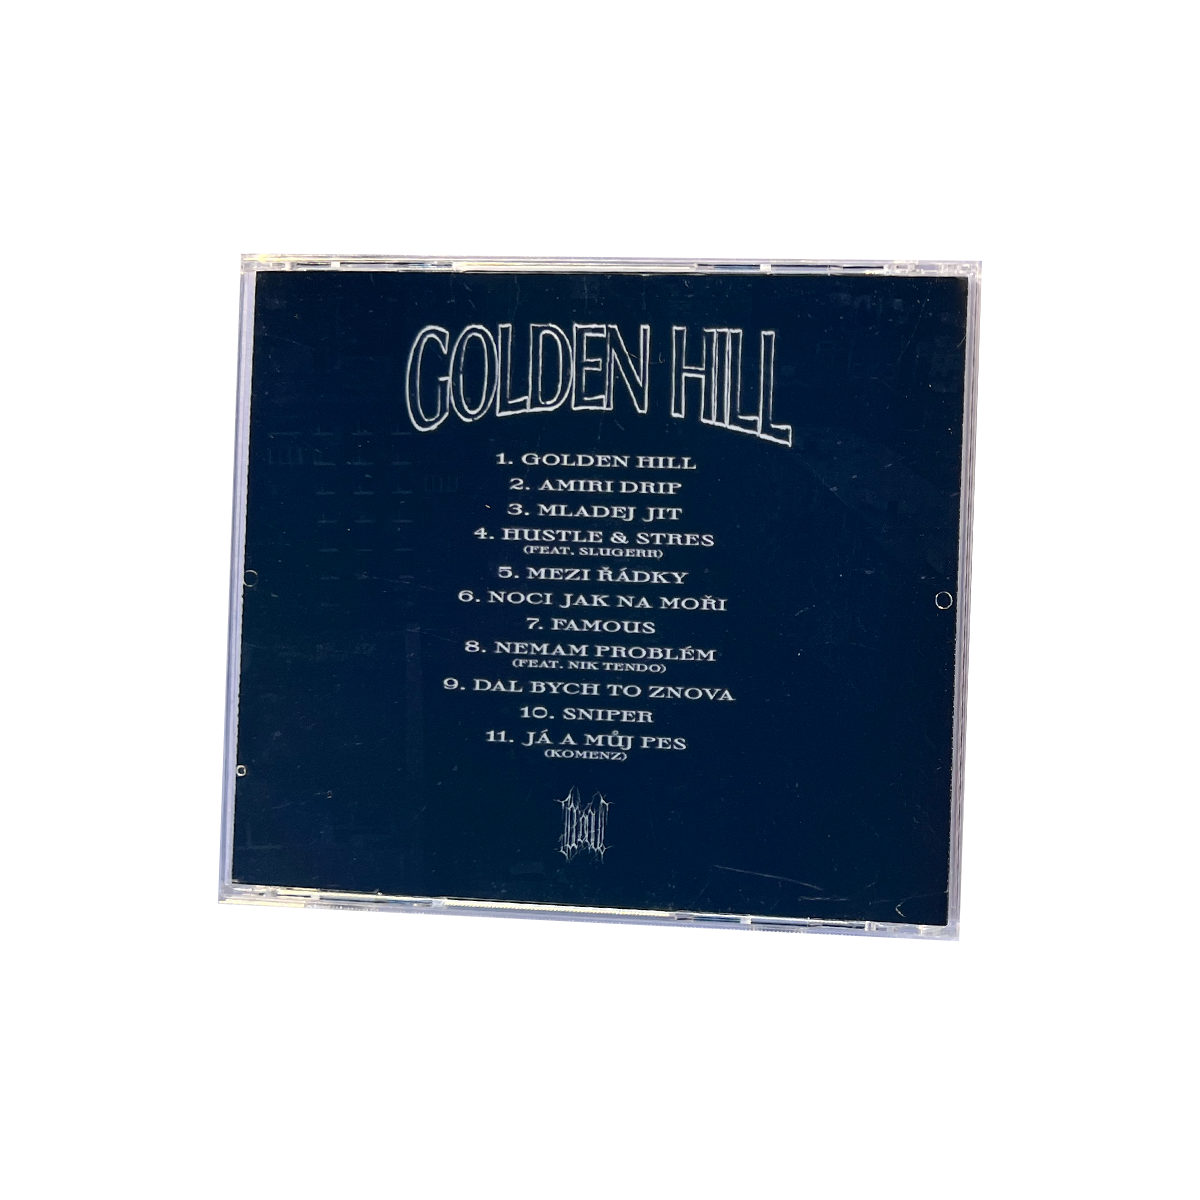 CD "GOLDEN HILL"